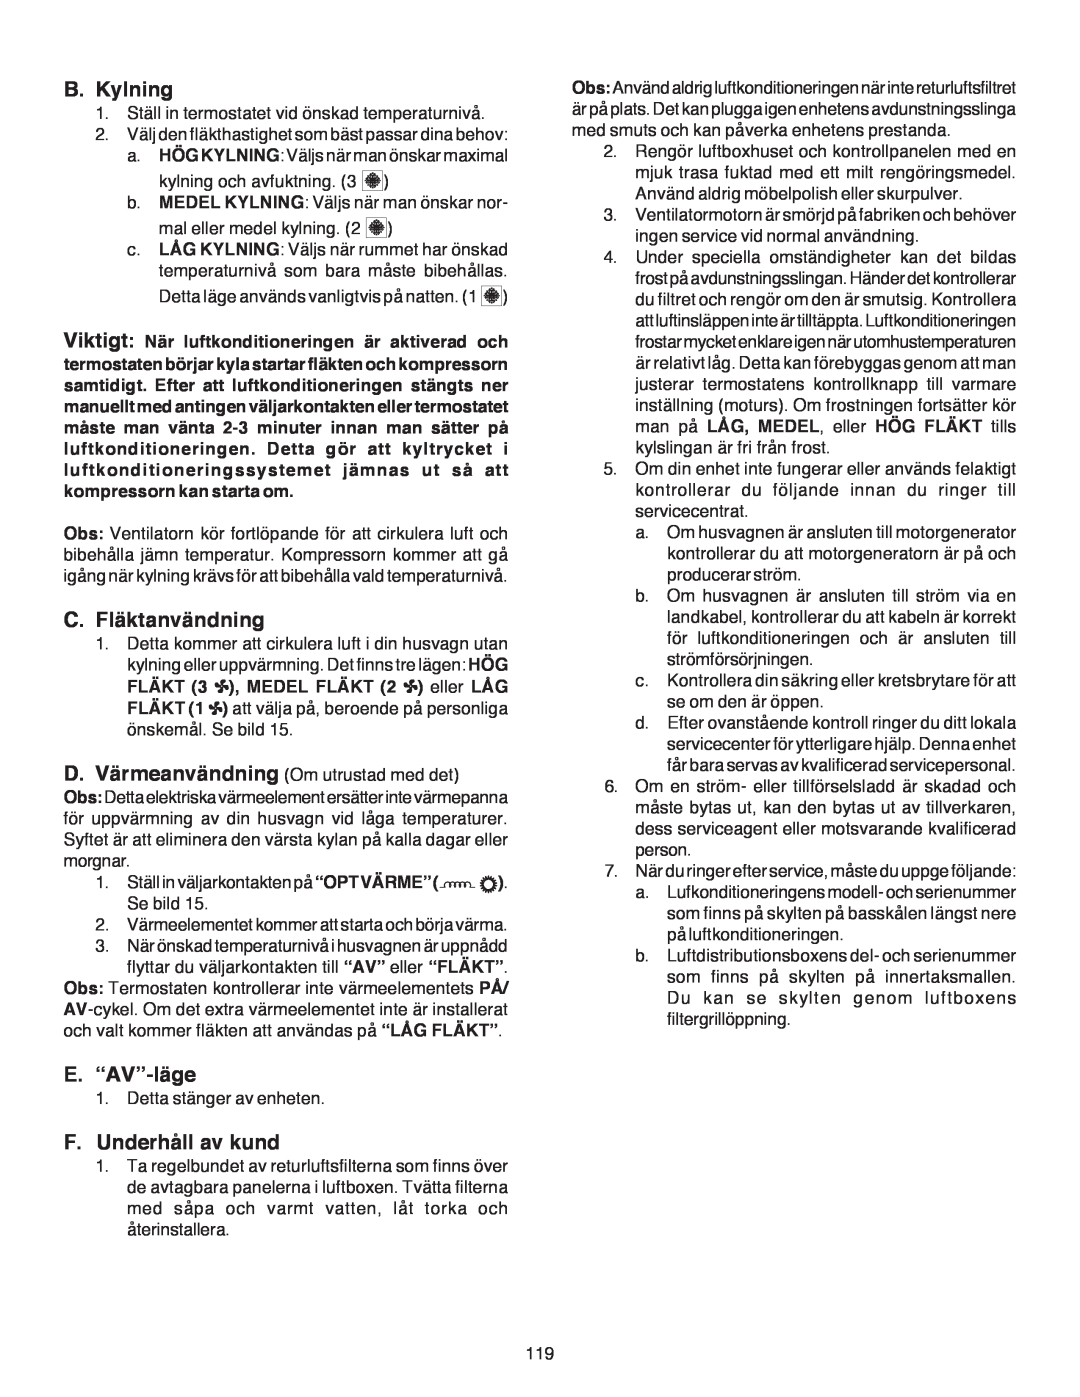 Dometic B3200 manual B.Kylning, C.Fläktanvändning, E.“AV”-läge, F.Underhåll av kund 